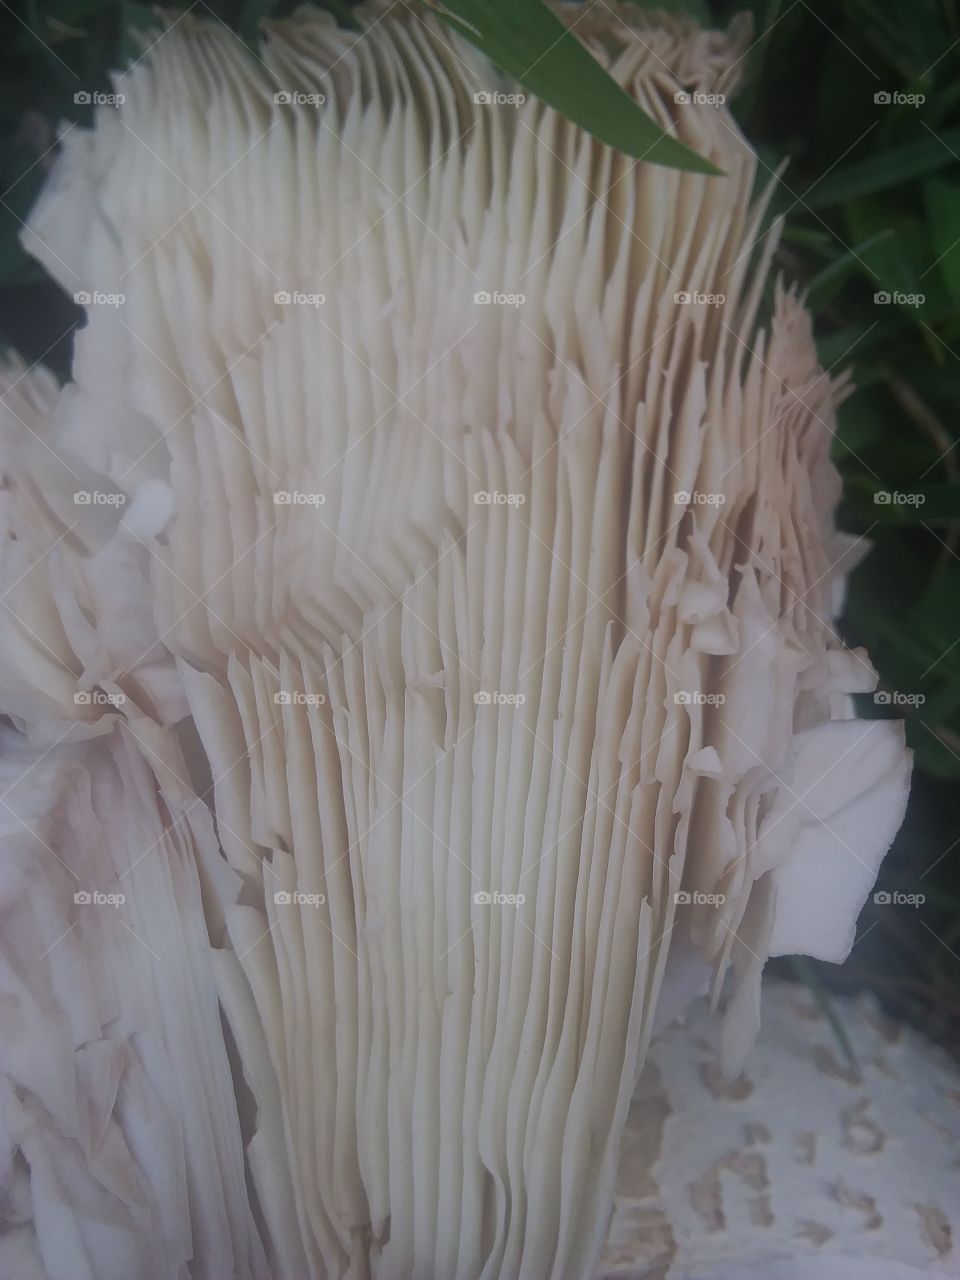 broken mushroom